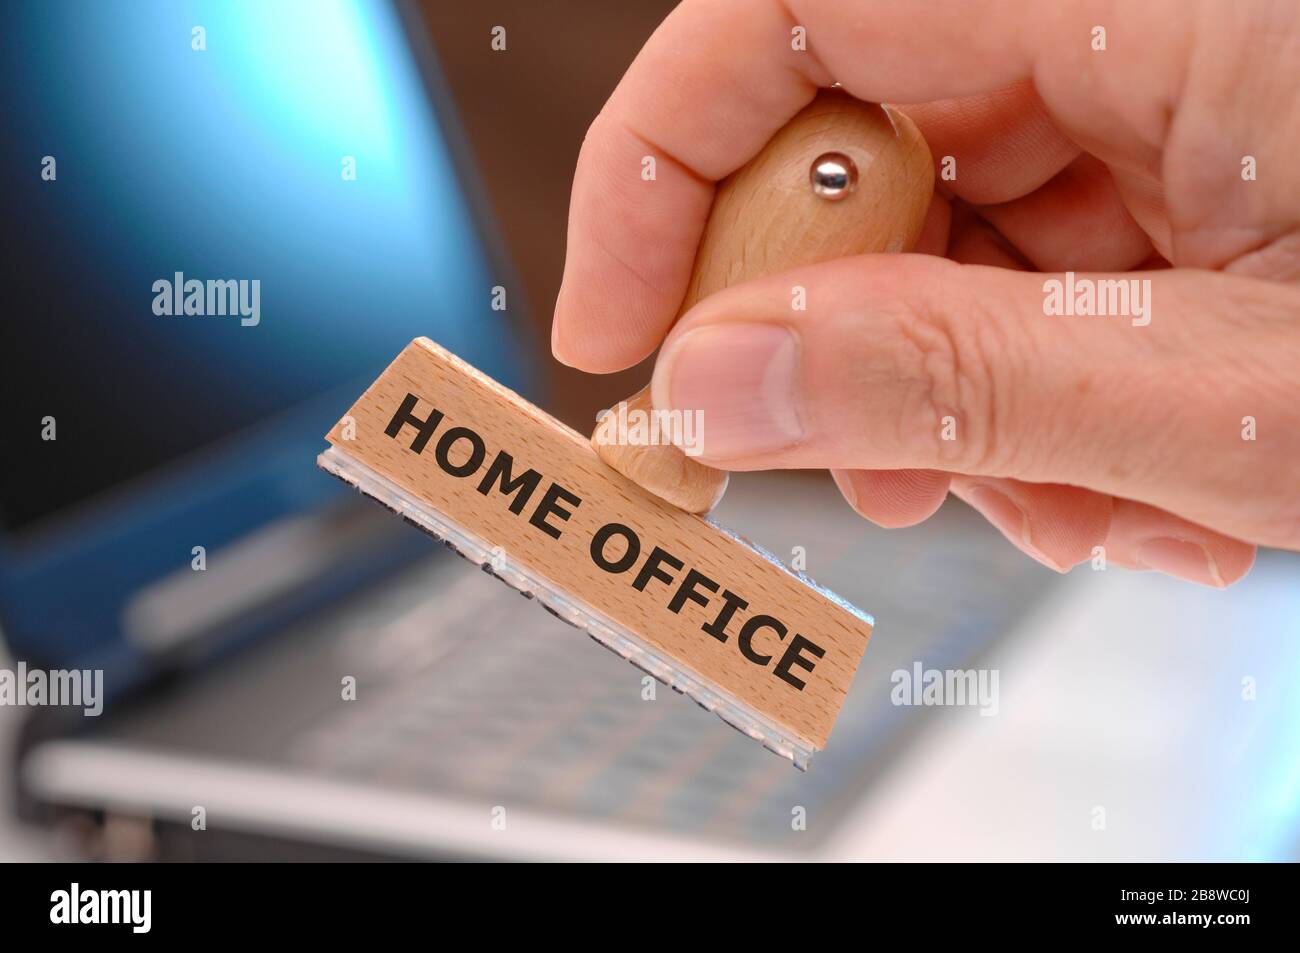 home Office steht auf einem Holzstempel im Büro Foto Stock